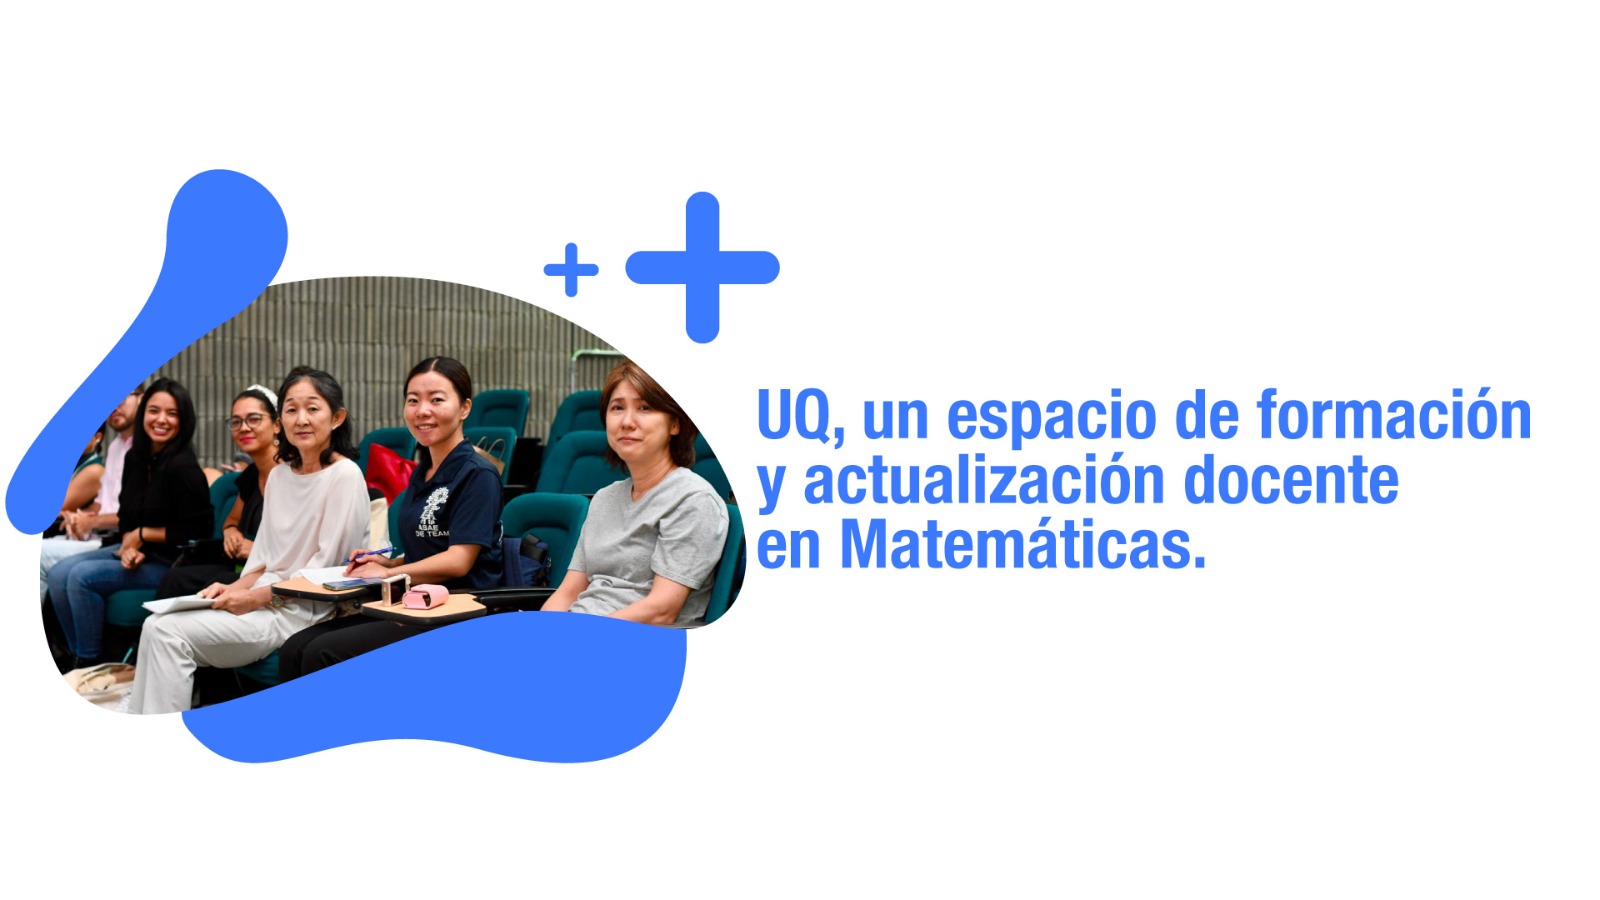 UQ, un espacio de formación docente en Matemáticas